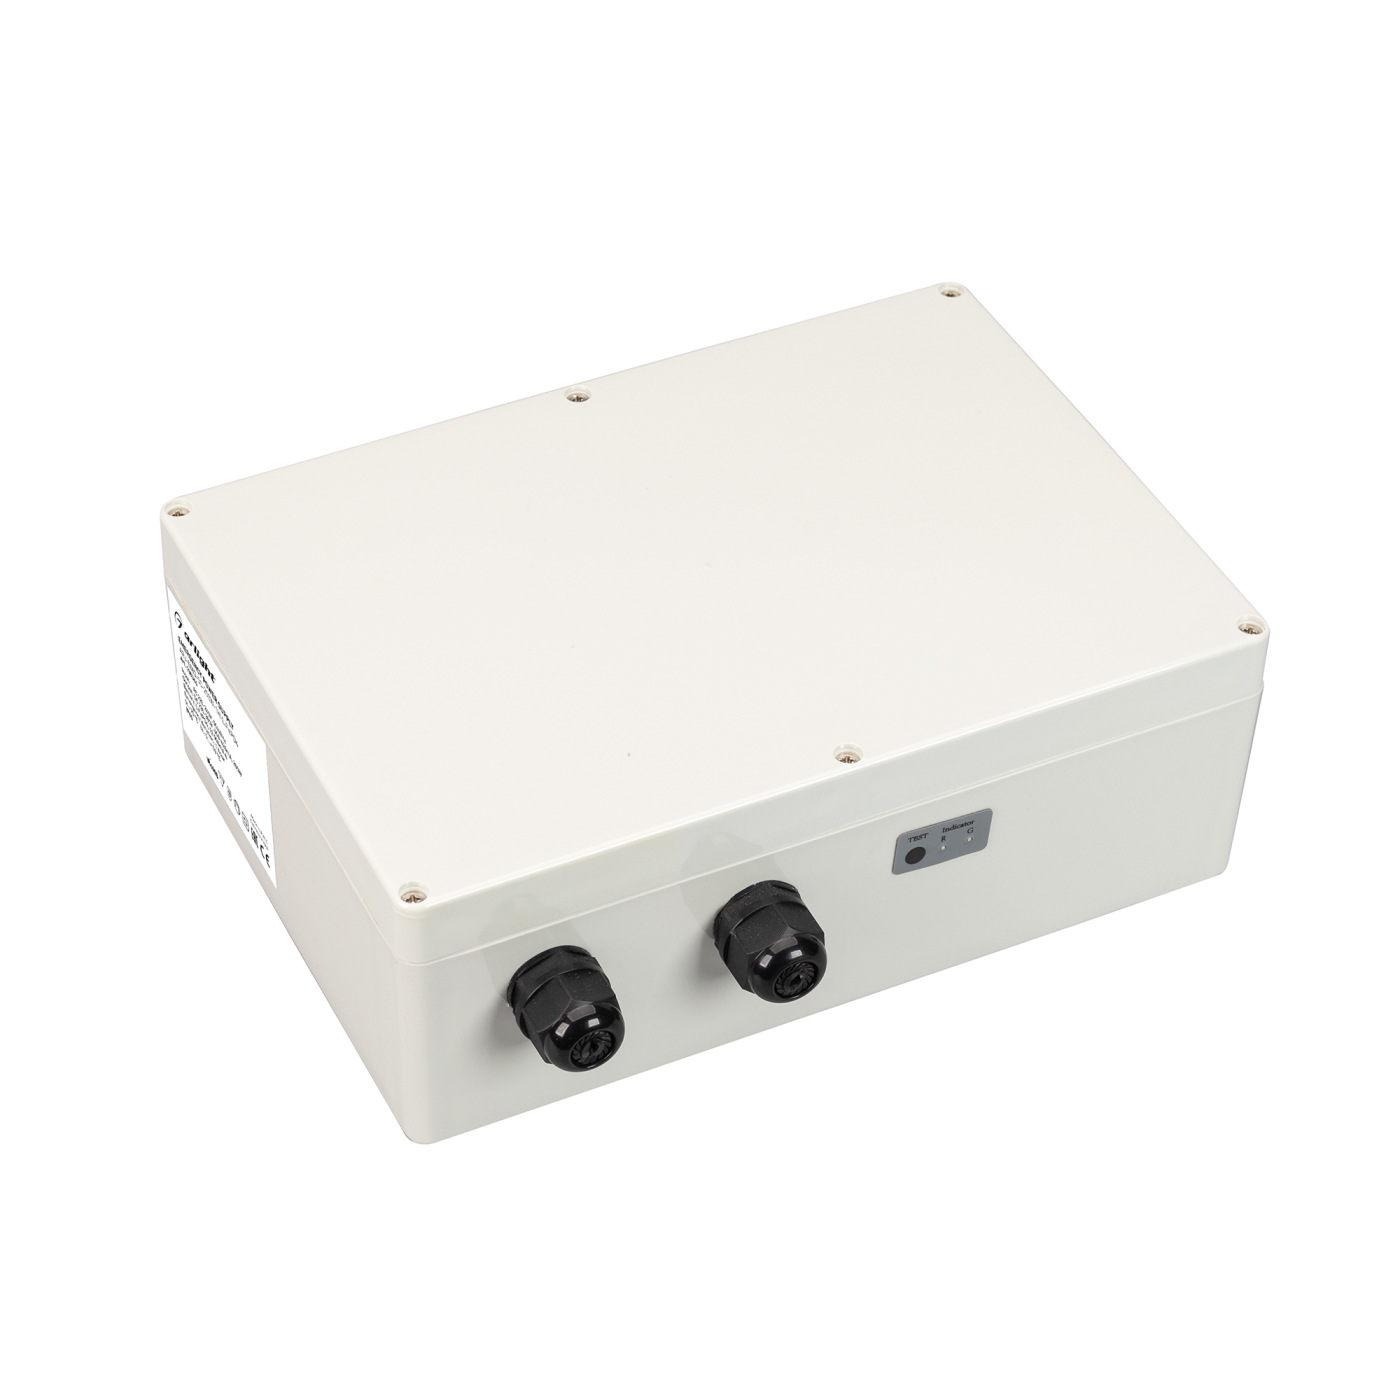 Блок аварийного питания ARJ-EMG-50-200W-1H-LiFePO4 (Arlight, IP65 Пластик, 3 года) блок аварийного питания для светильников feron ek50 до 50w